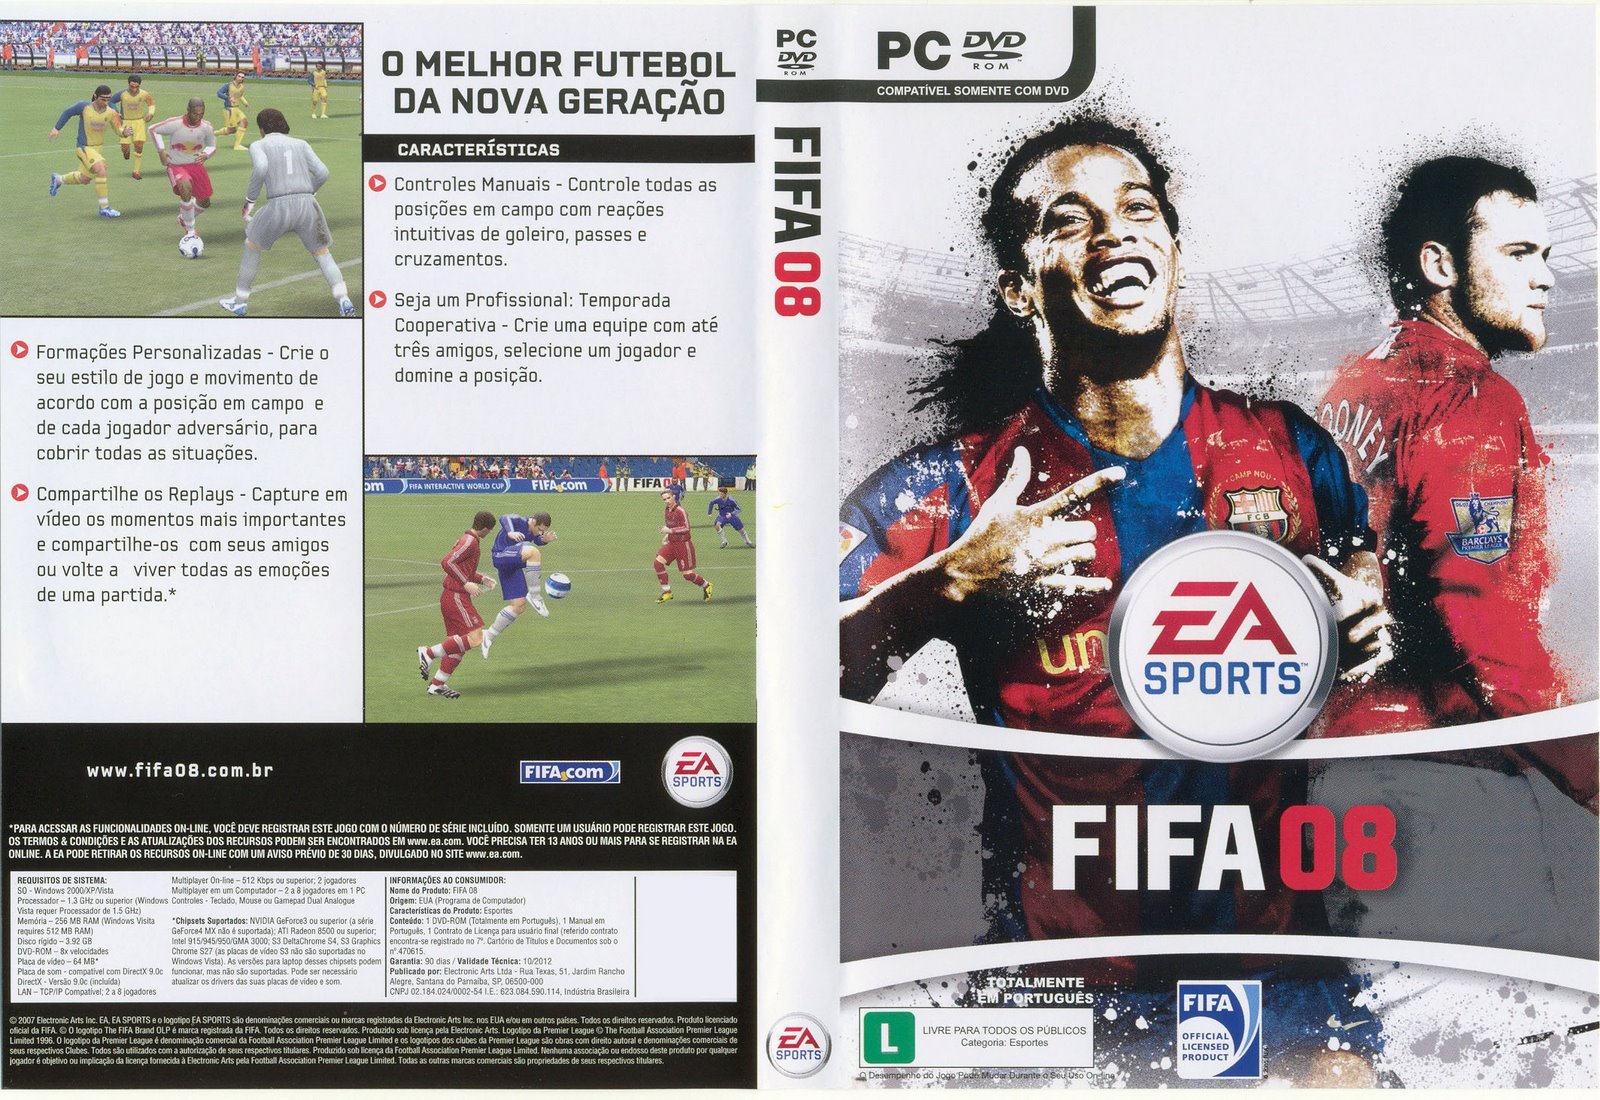 FIFA 08 NO CD DVD CRACK DOWNLOAD